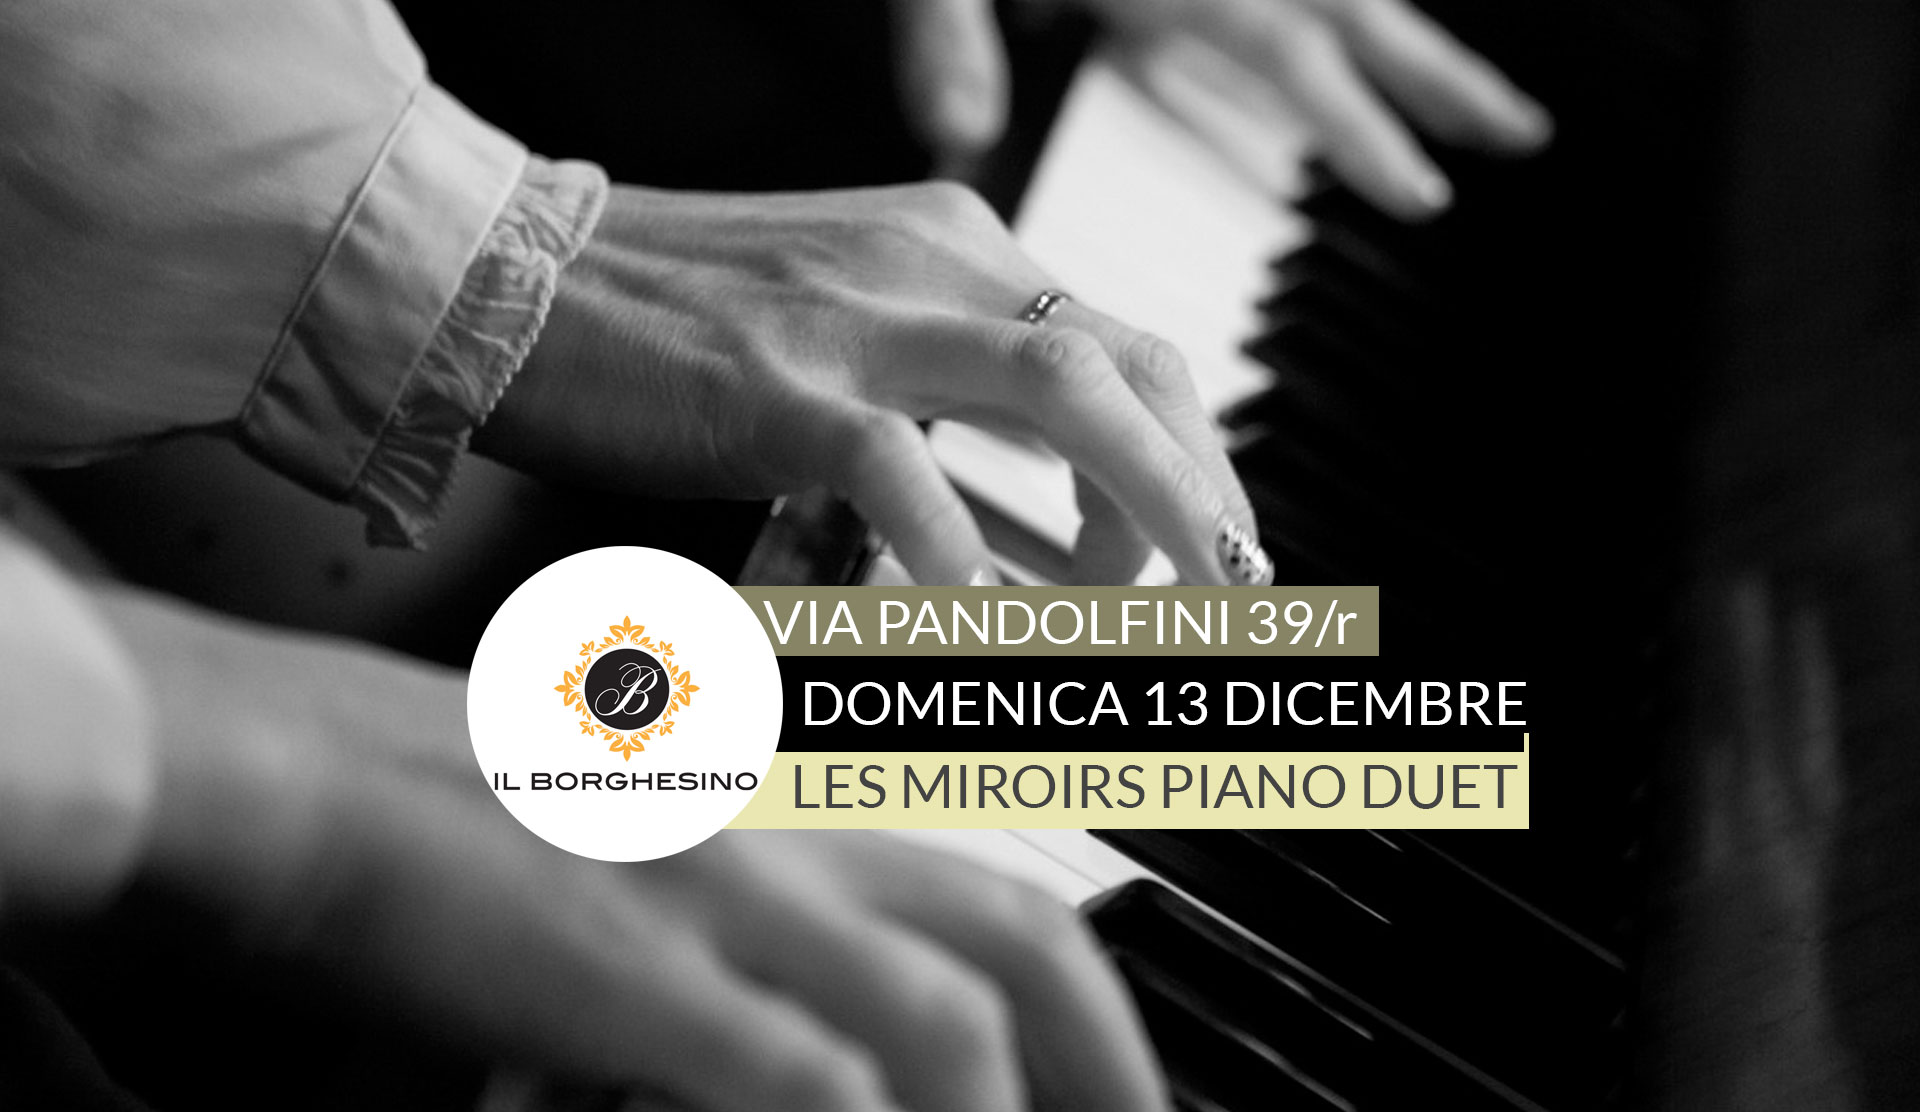 Domenica 13 Dicembre – Il Borghesino musica e bollicine – Les miroirs piano duet